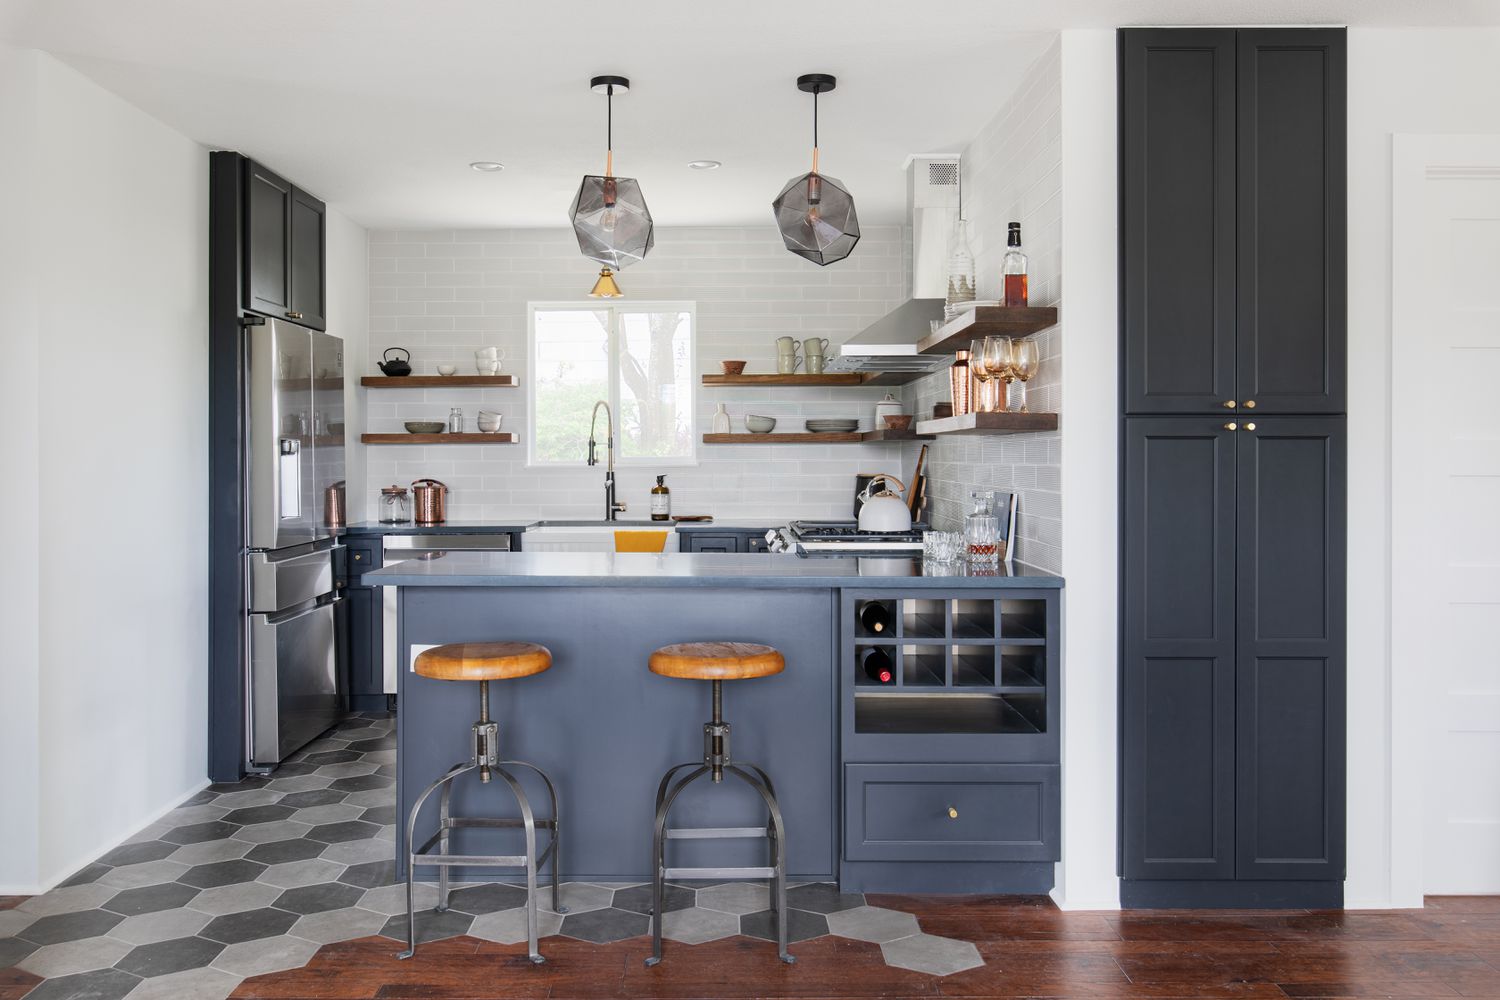 Um piso de cozinha de ladrilhos cinza escuro e cinza claro é combinado com armários azuis escuros